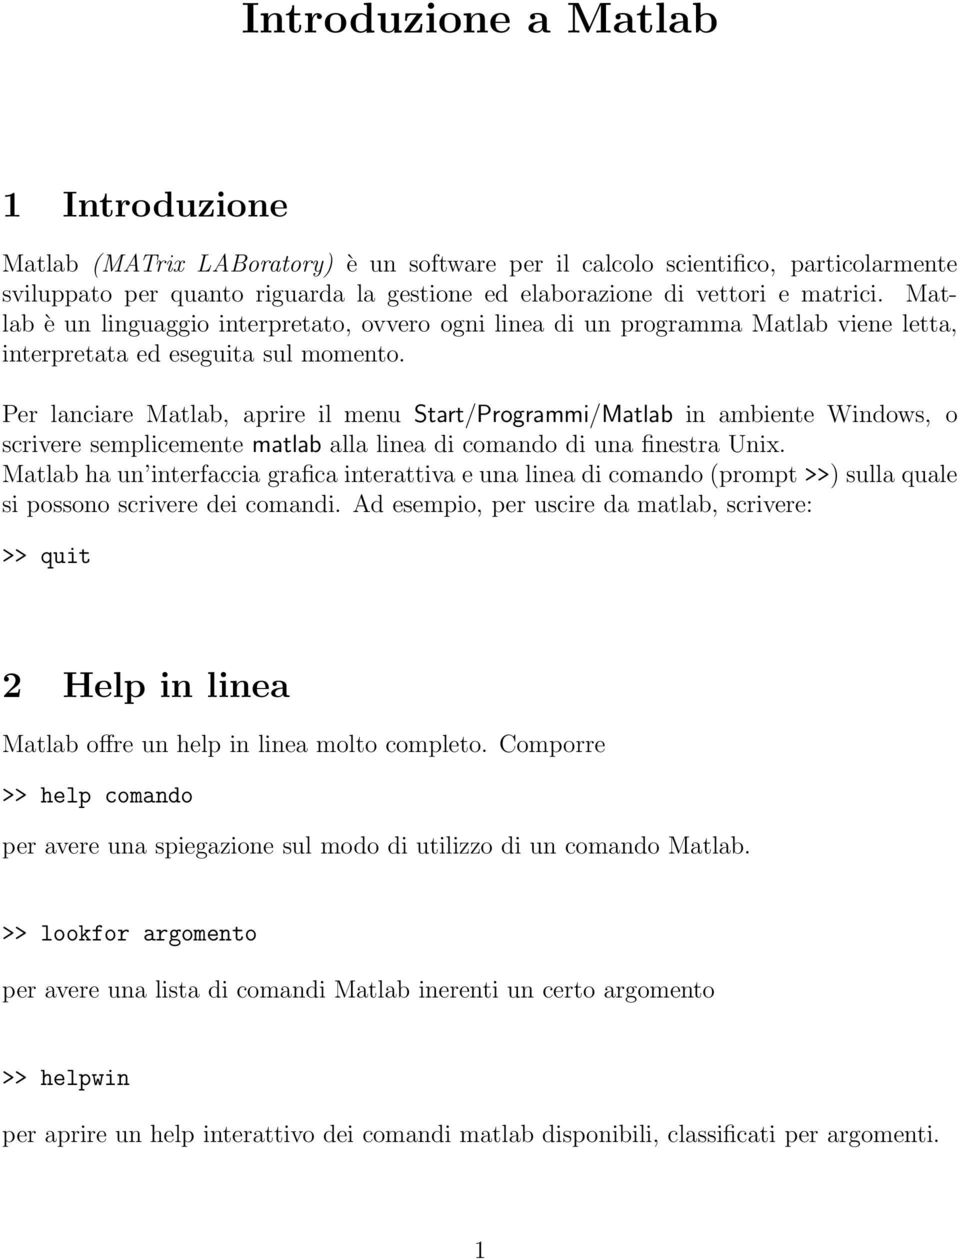 Per lanciare Matlab, aprire il menu Start/Programmi/Matlab in ambiente Windows, o scrivere semplicemente matlab alla linea di comando di una finestra Unix.